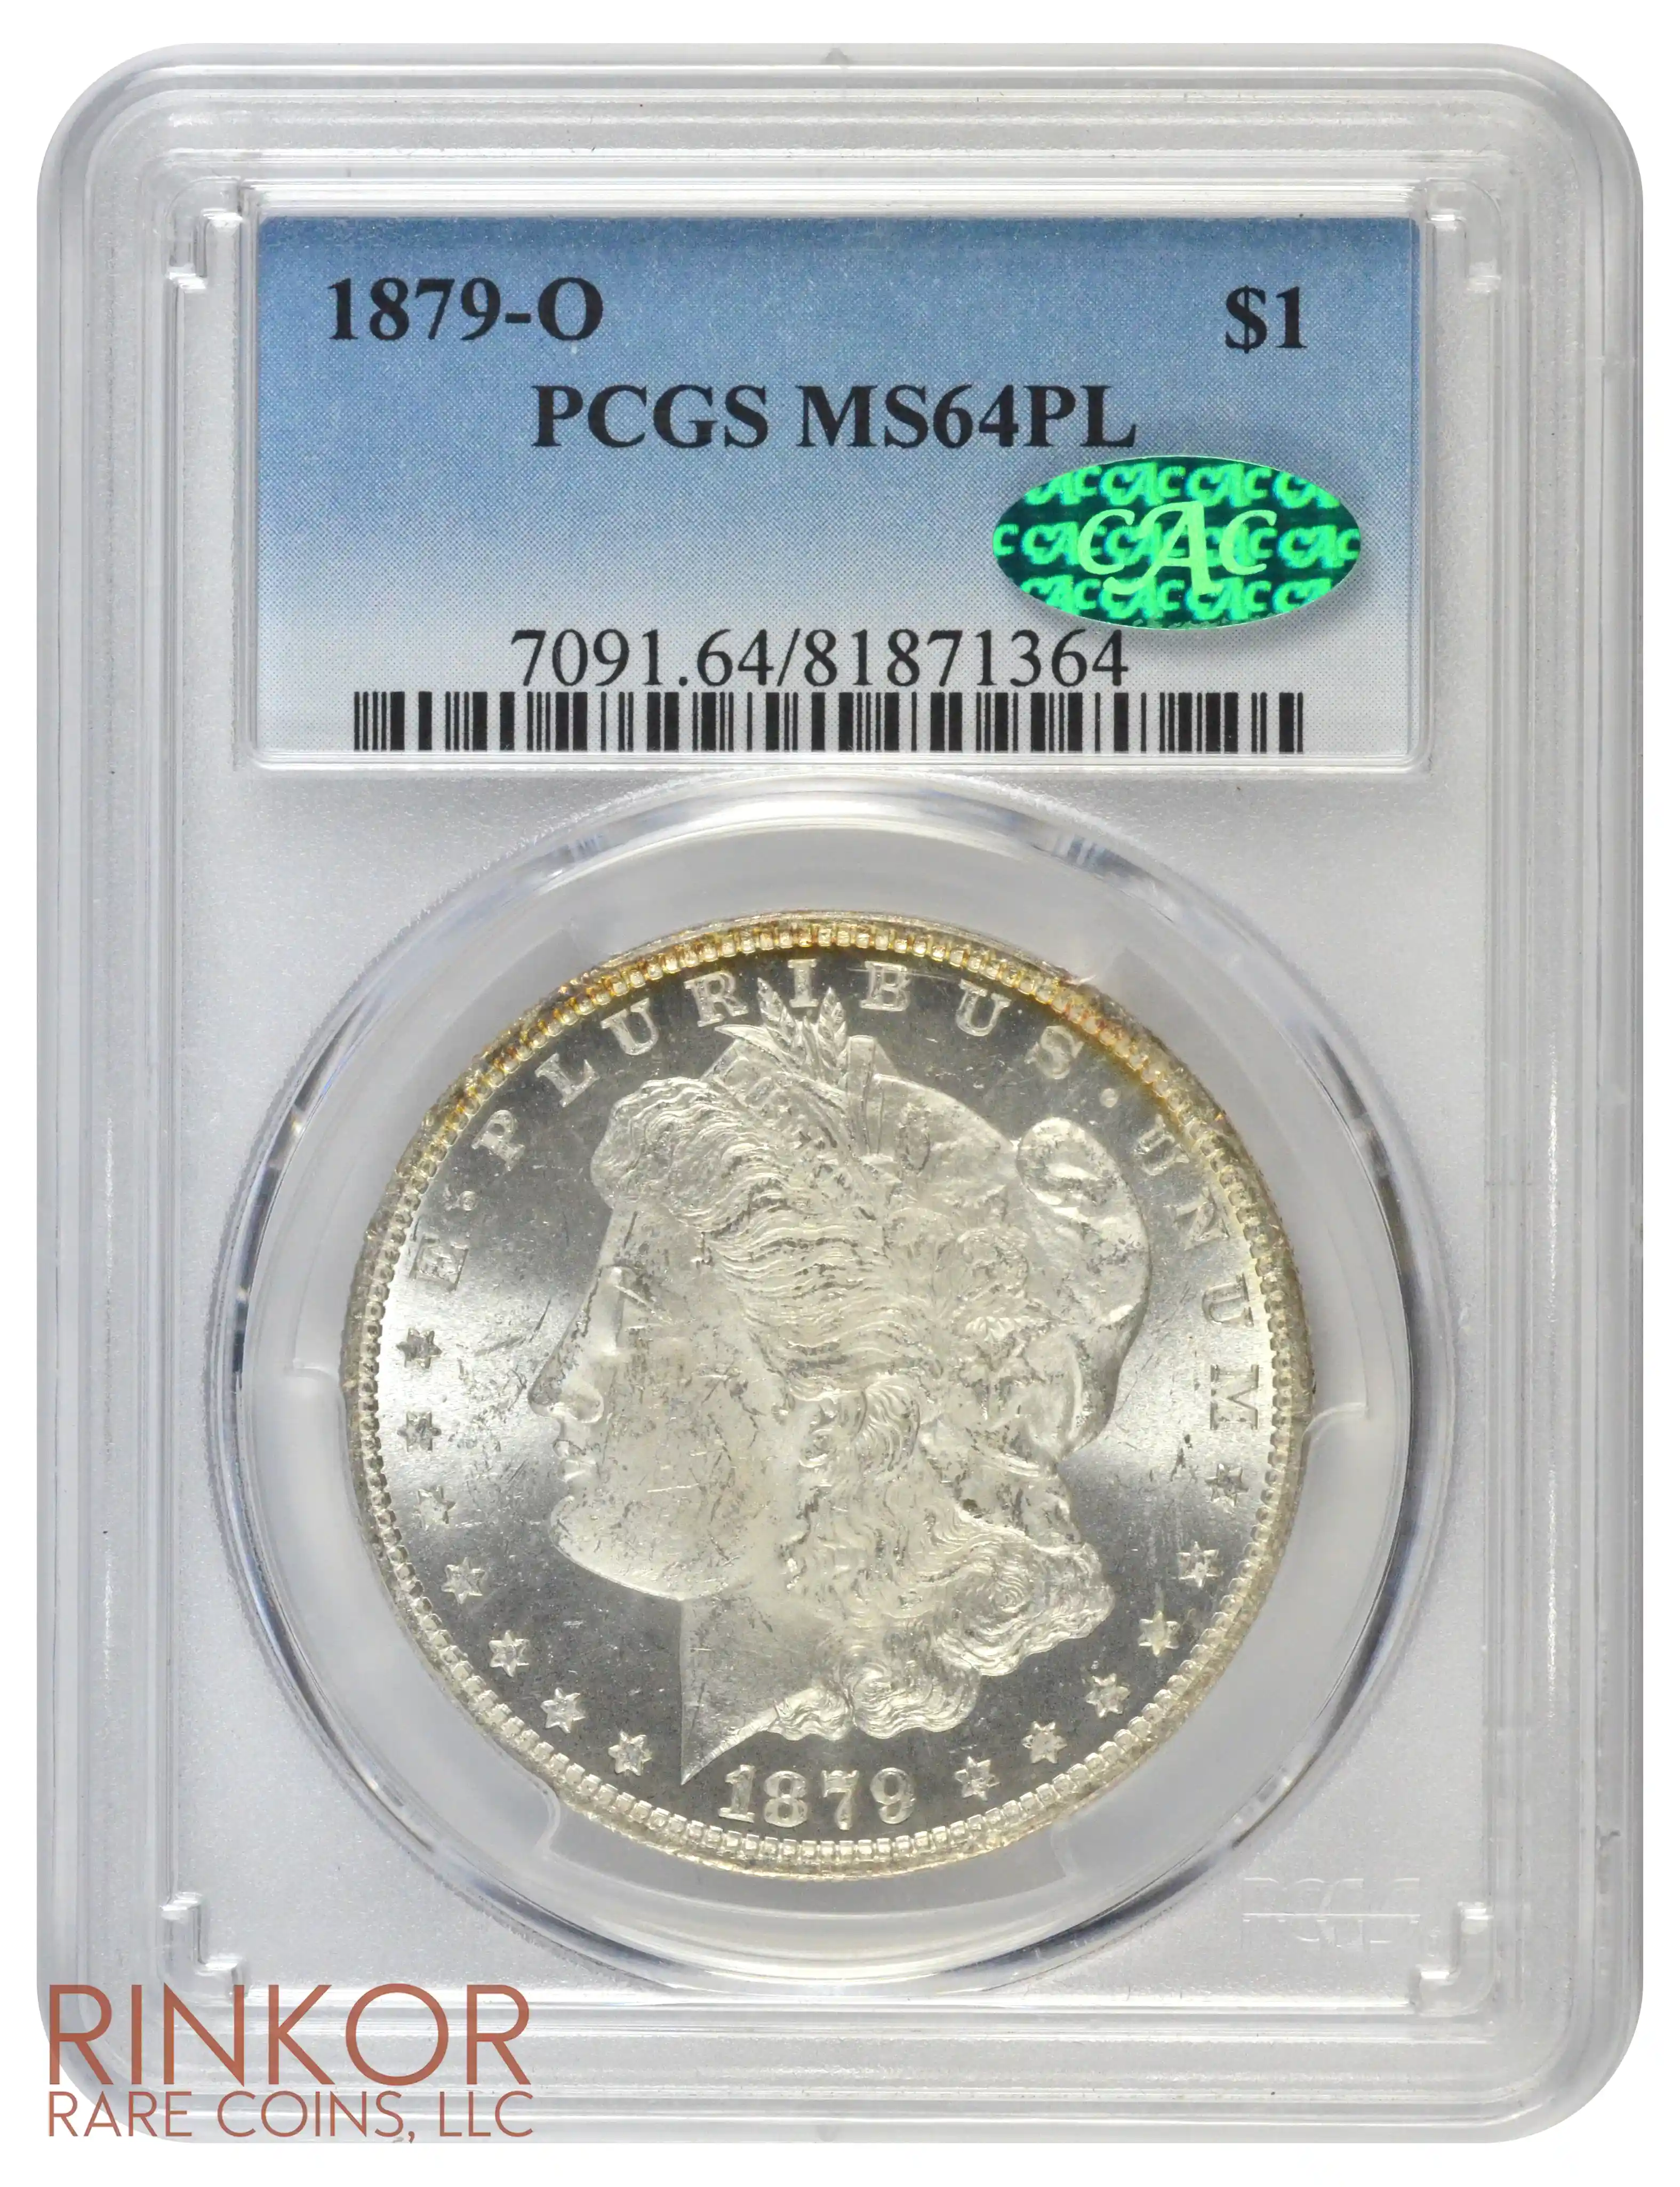 1879-O $1 PCGS MS 64 PL CAC